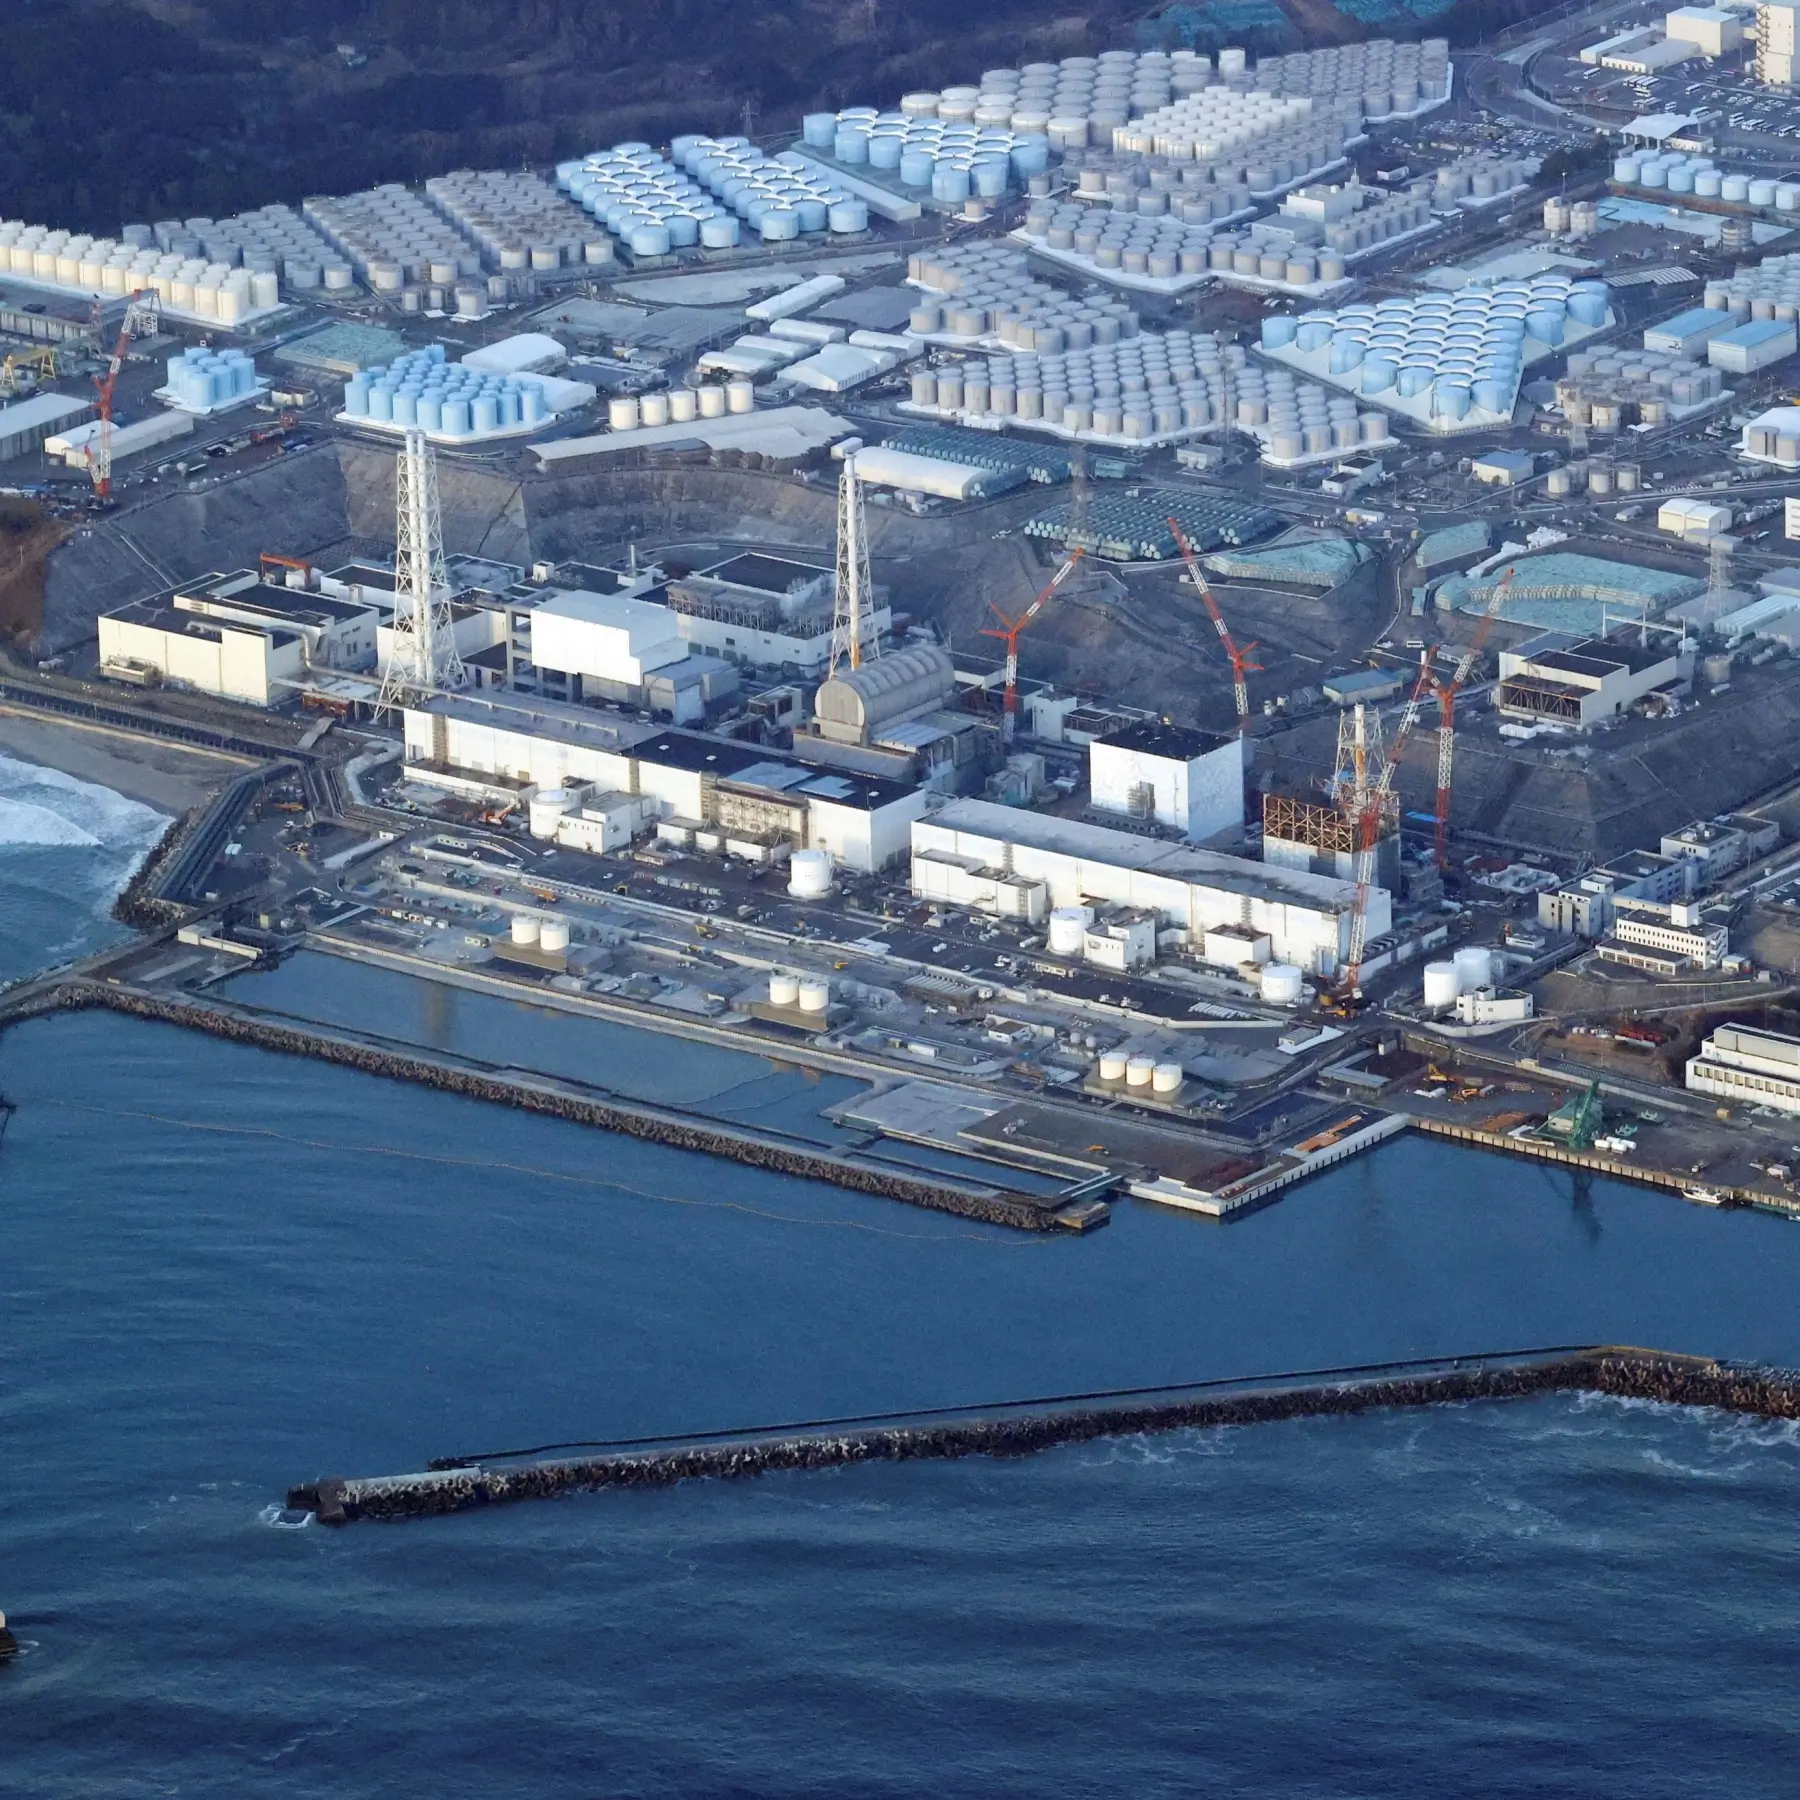 후쿠시마 방사능수를 바다에 방류하려는 일본의 계획은 우려를 불러일으킨다